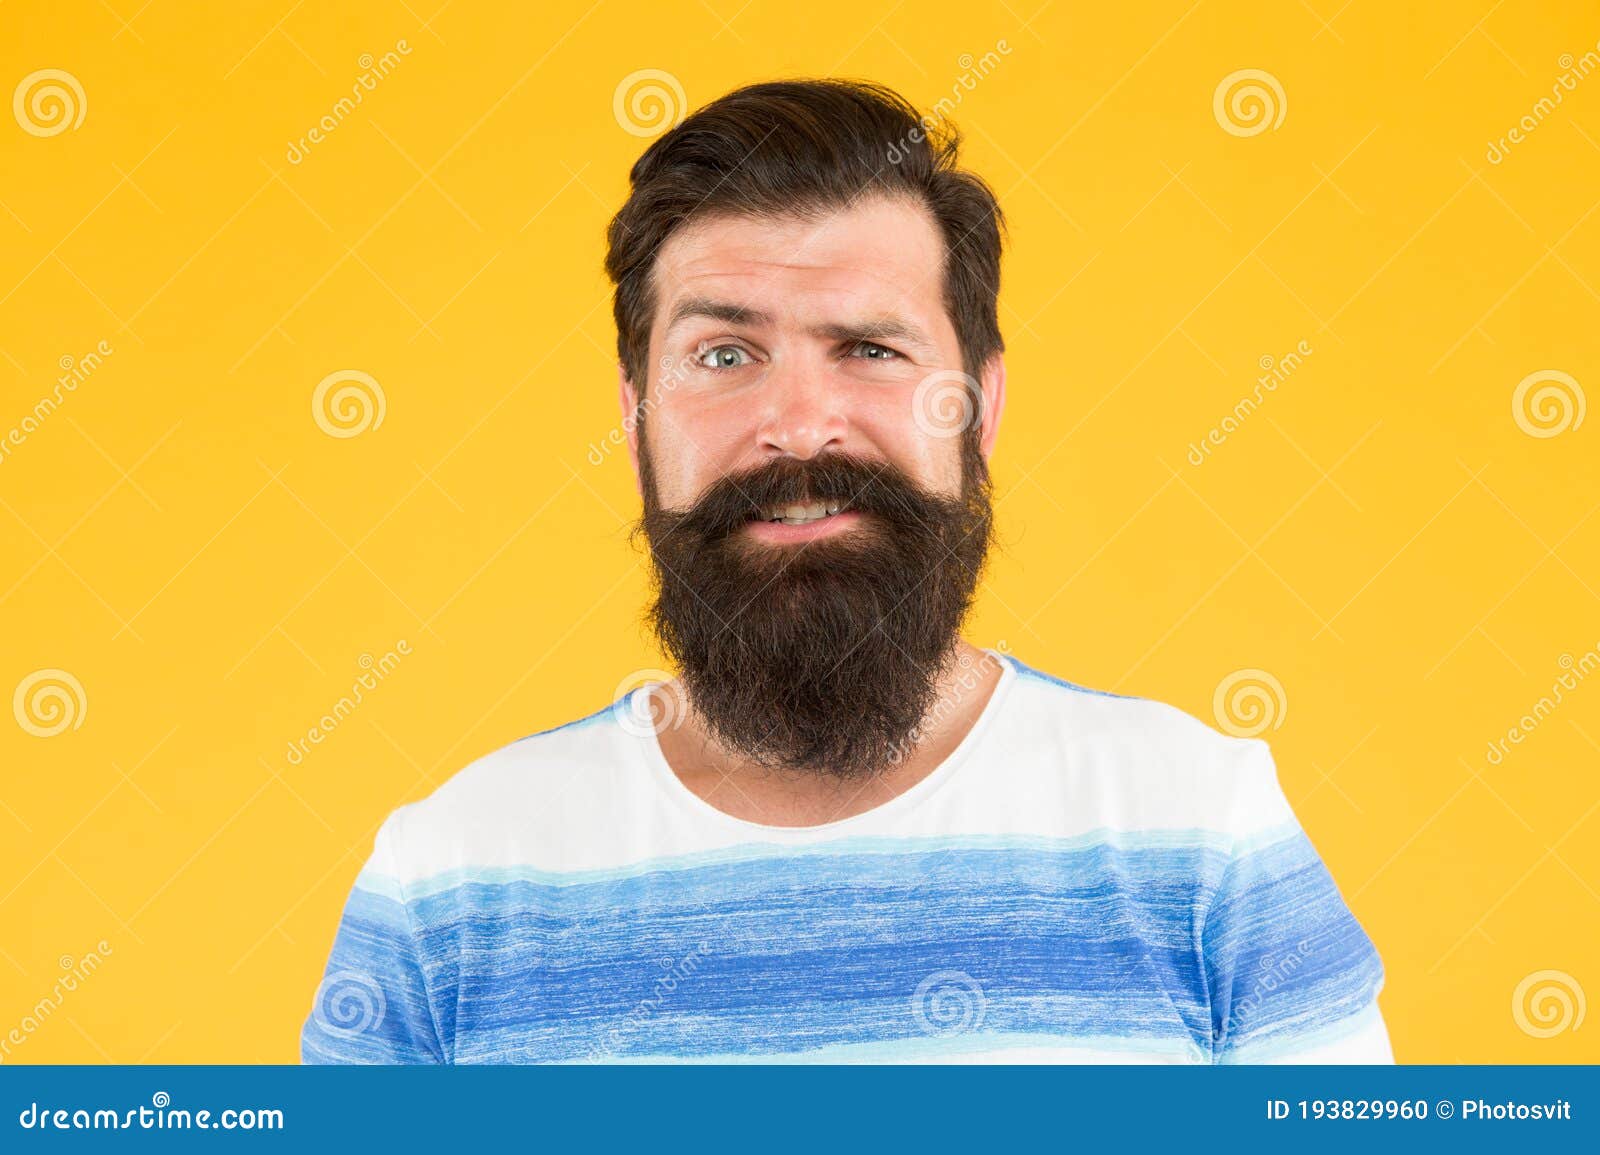 Emotional Intelligence. Man Bearded Stylish Beard Yellow Background ...